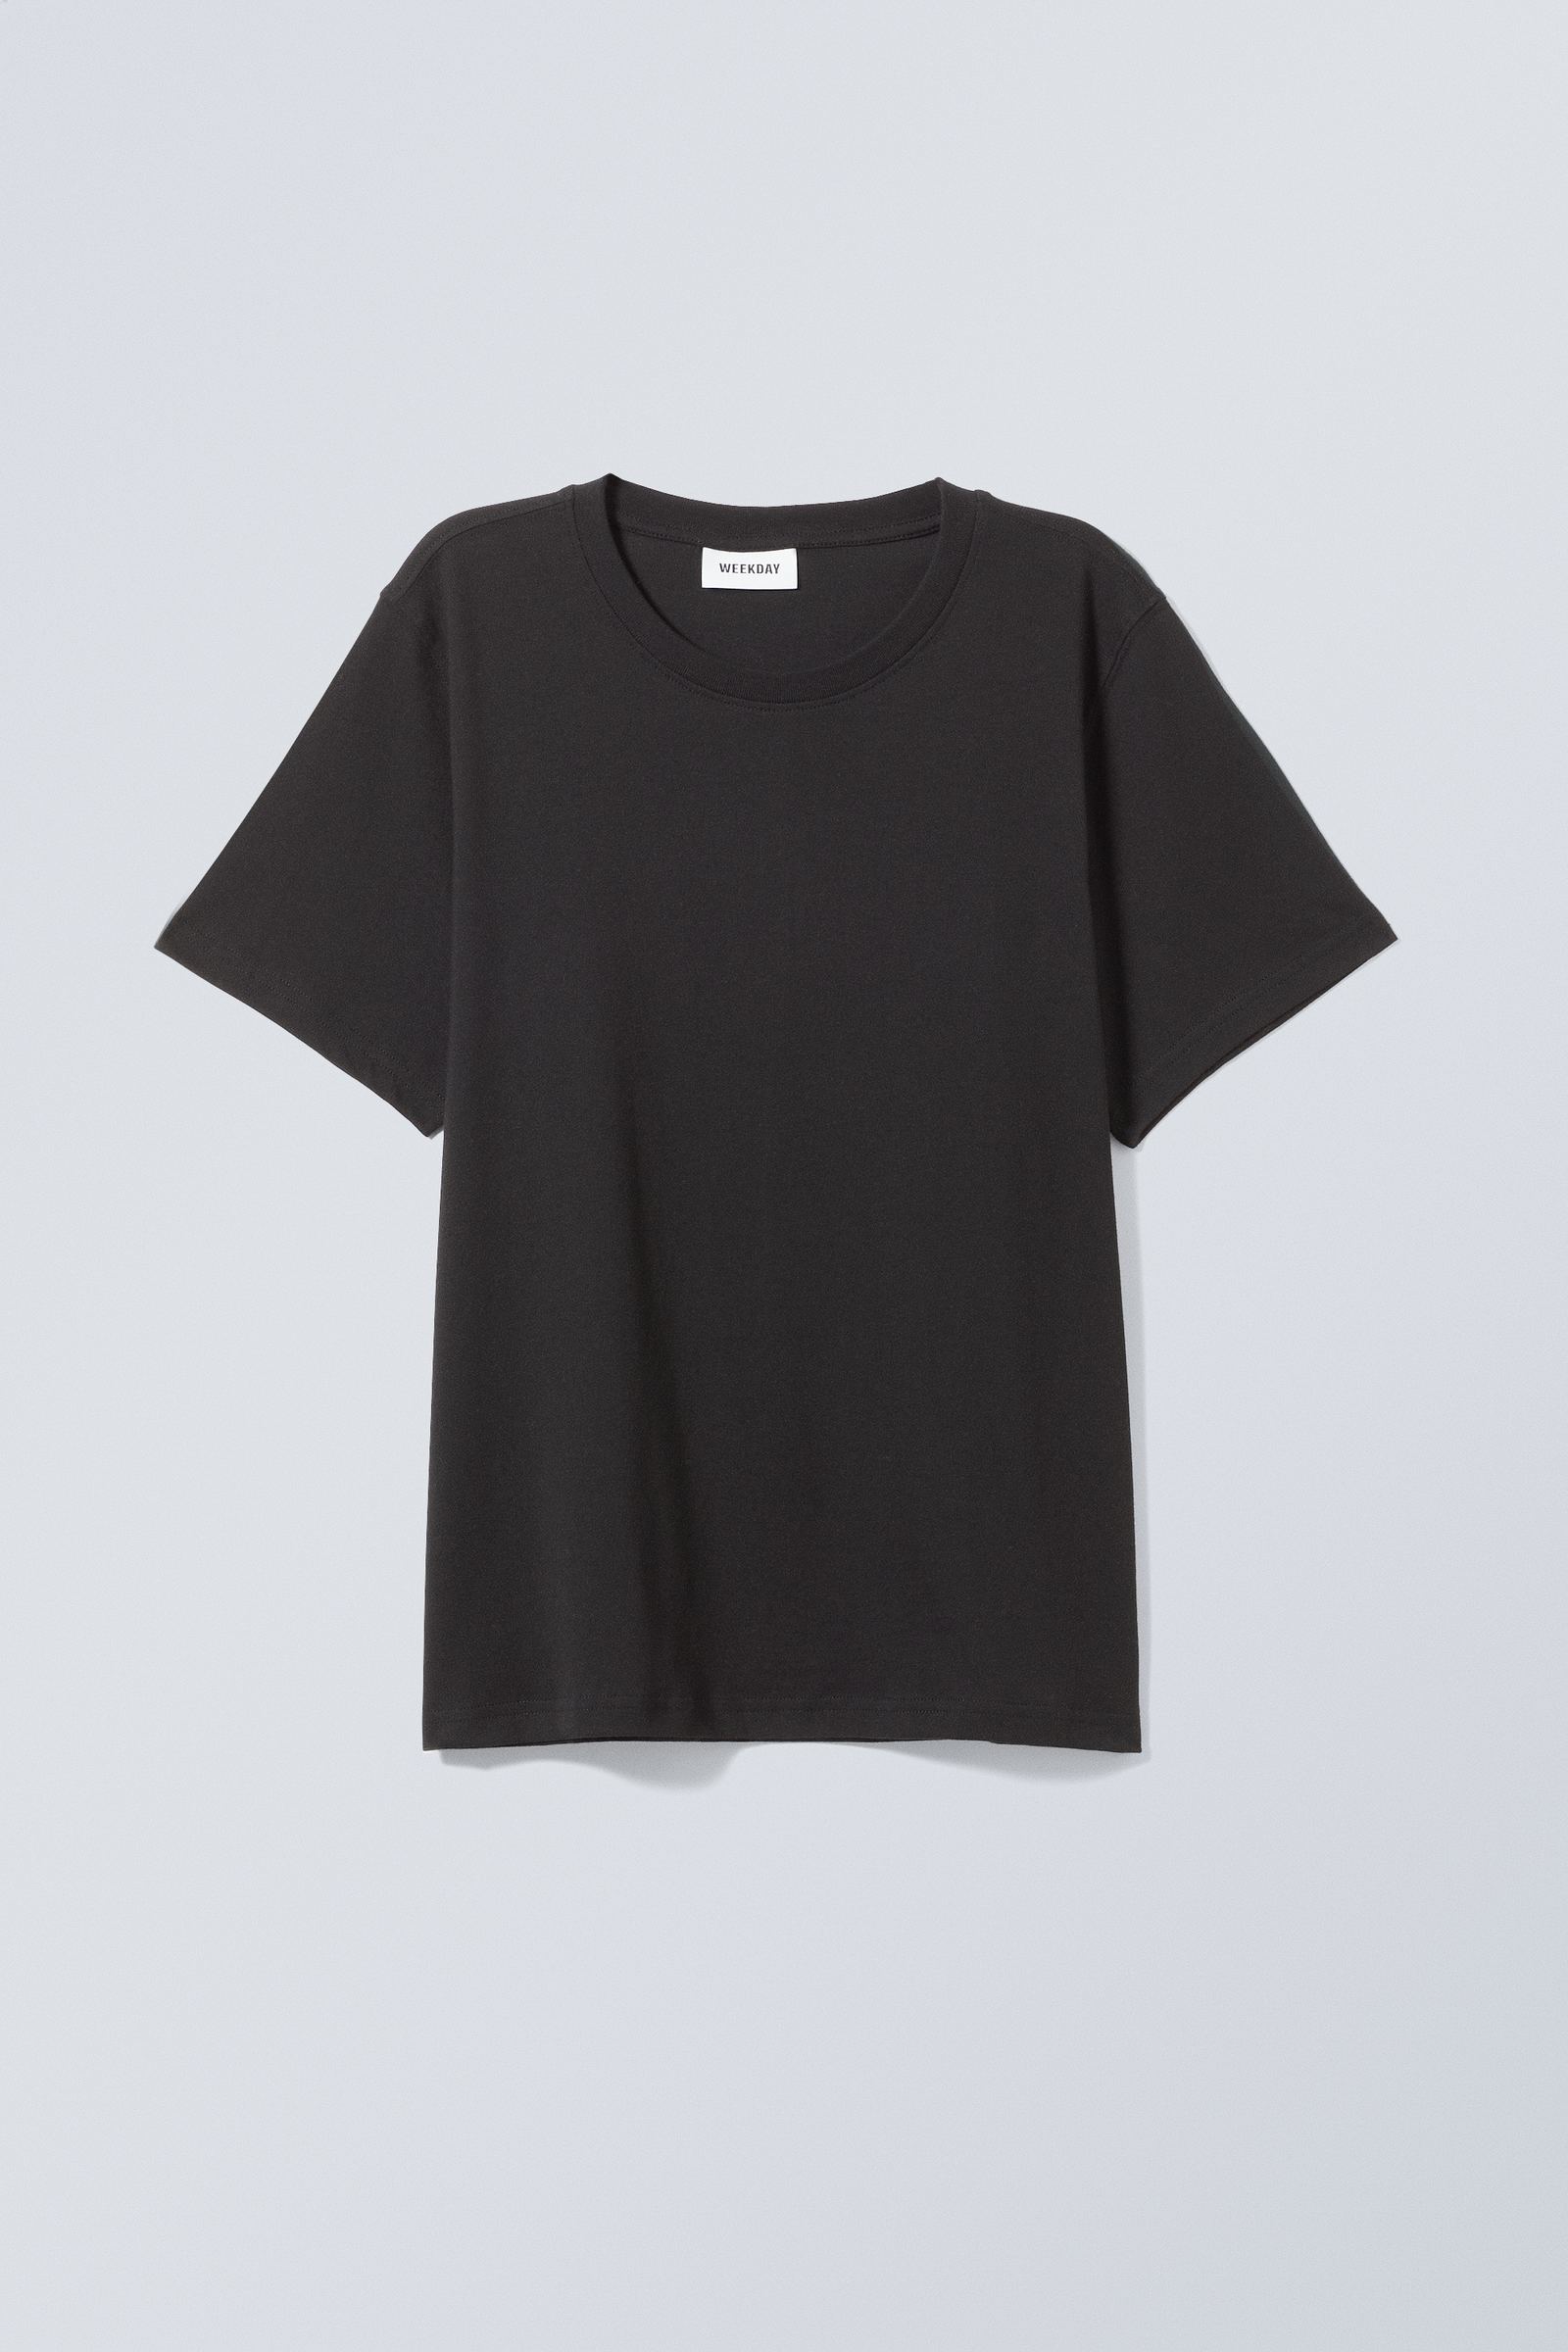 #272628 - Essence Standard Tshirt - 1